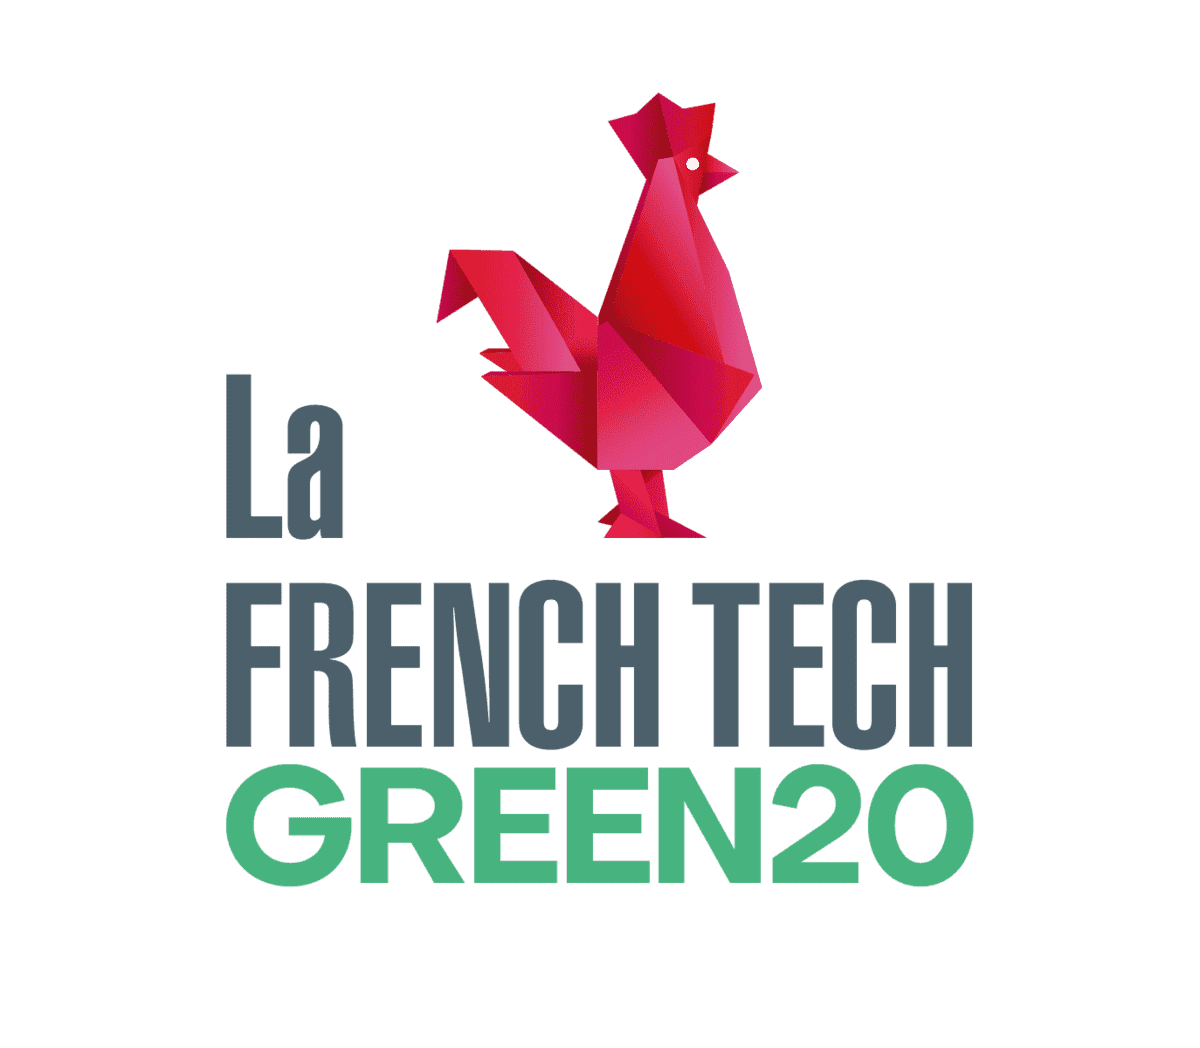 la french tech green20 logo